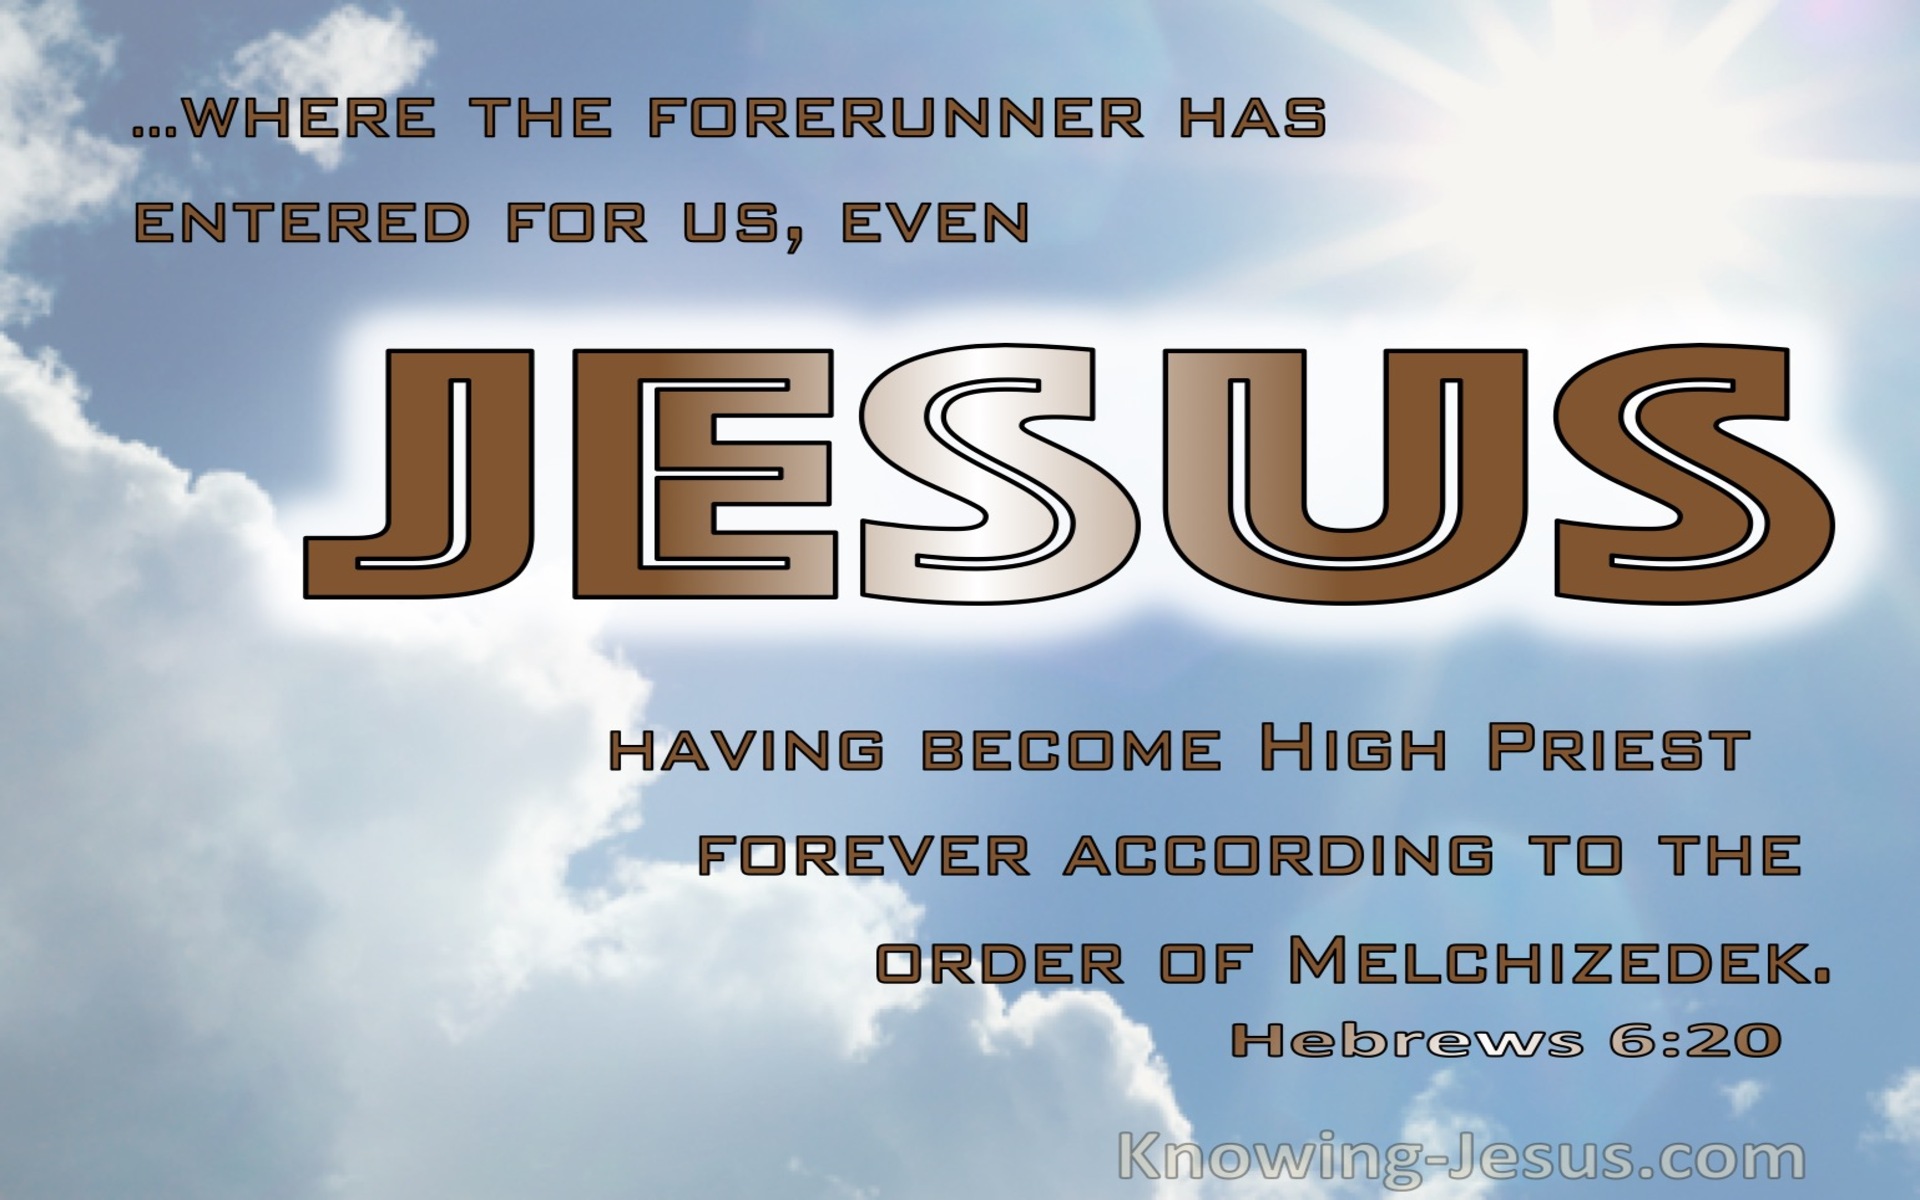 Hebrews 6:20 Jesus Having Become High Priest Forever After The Order Of Melchizedek (gold)